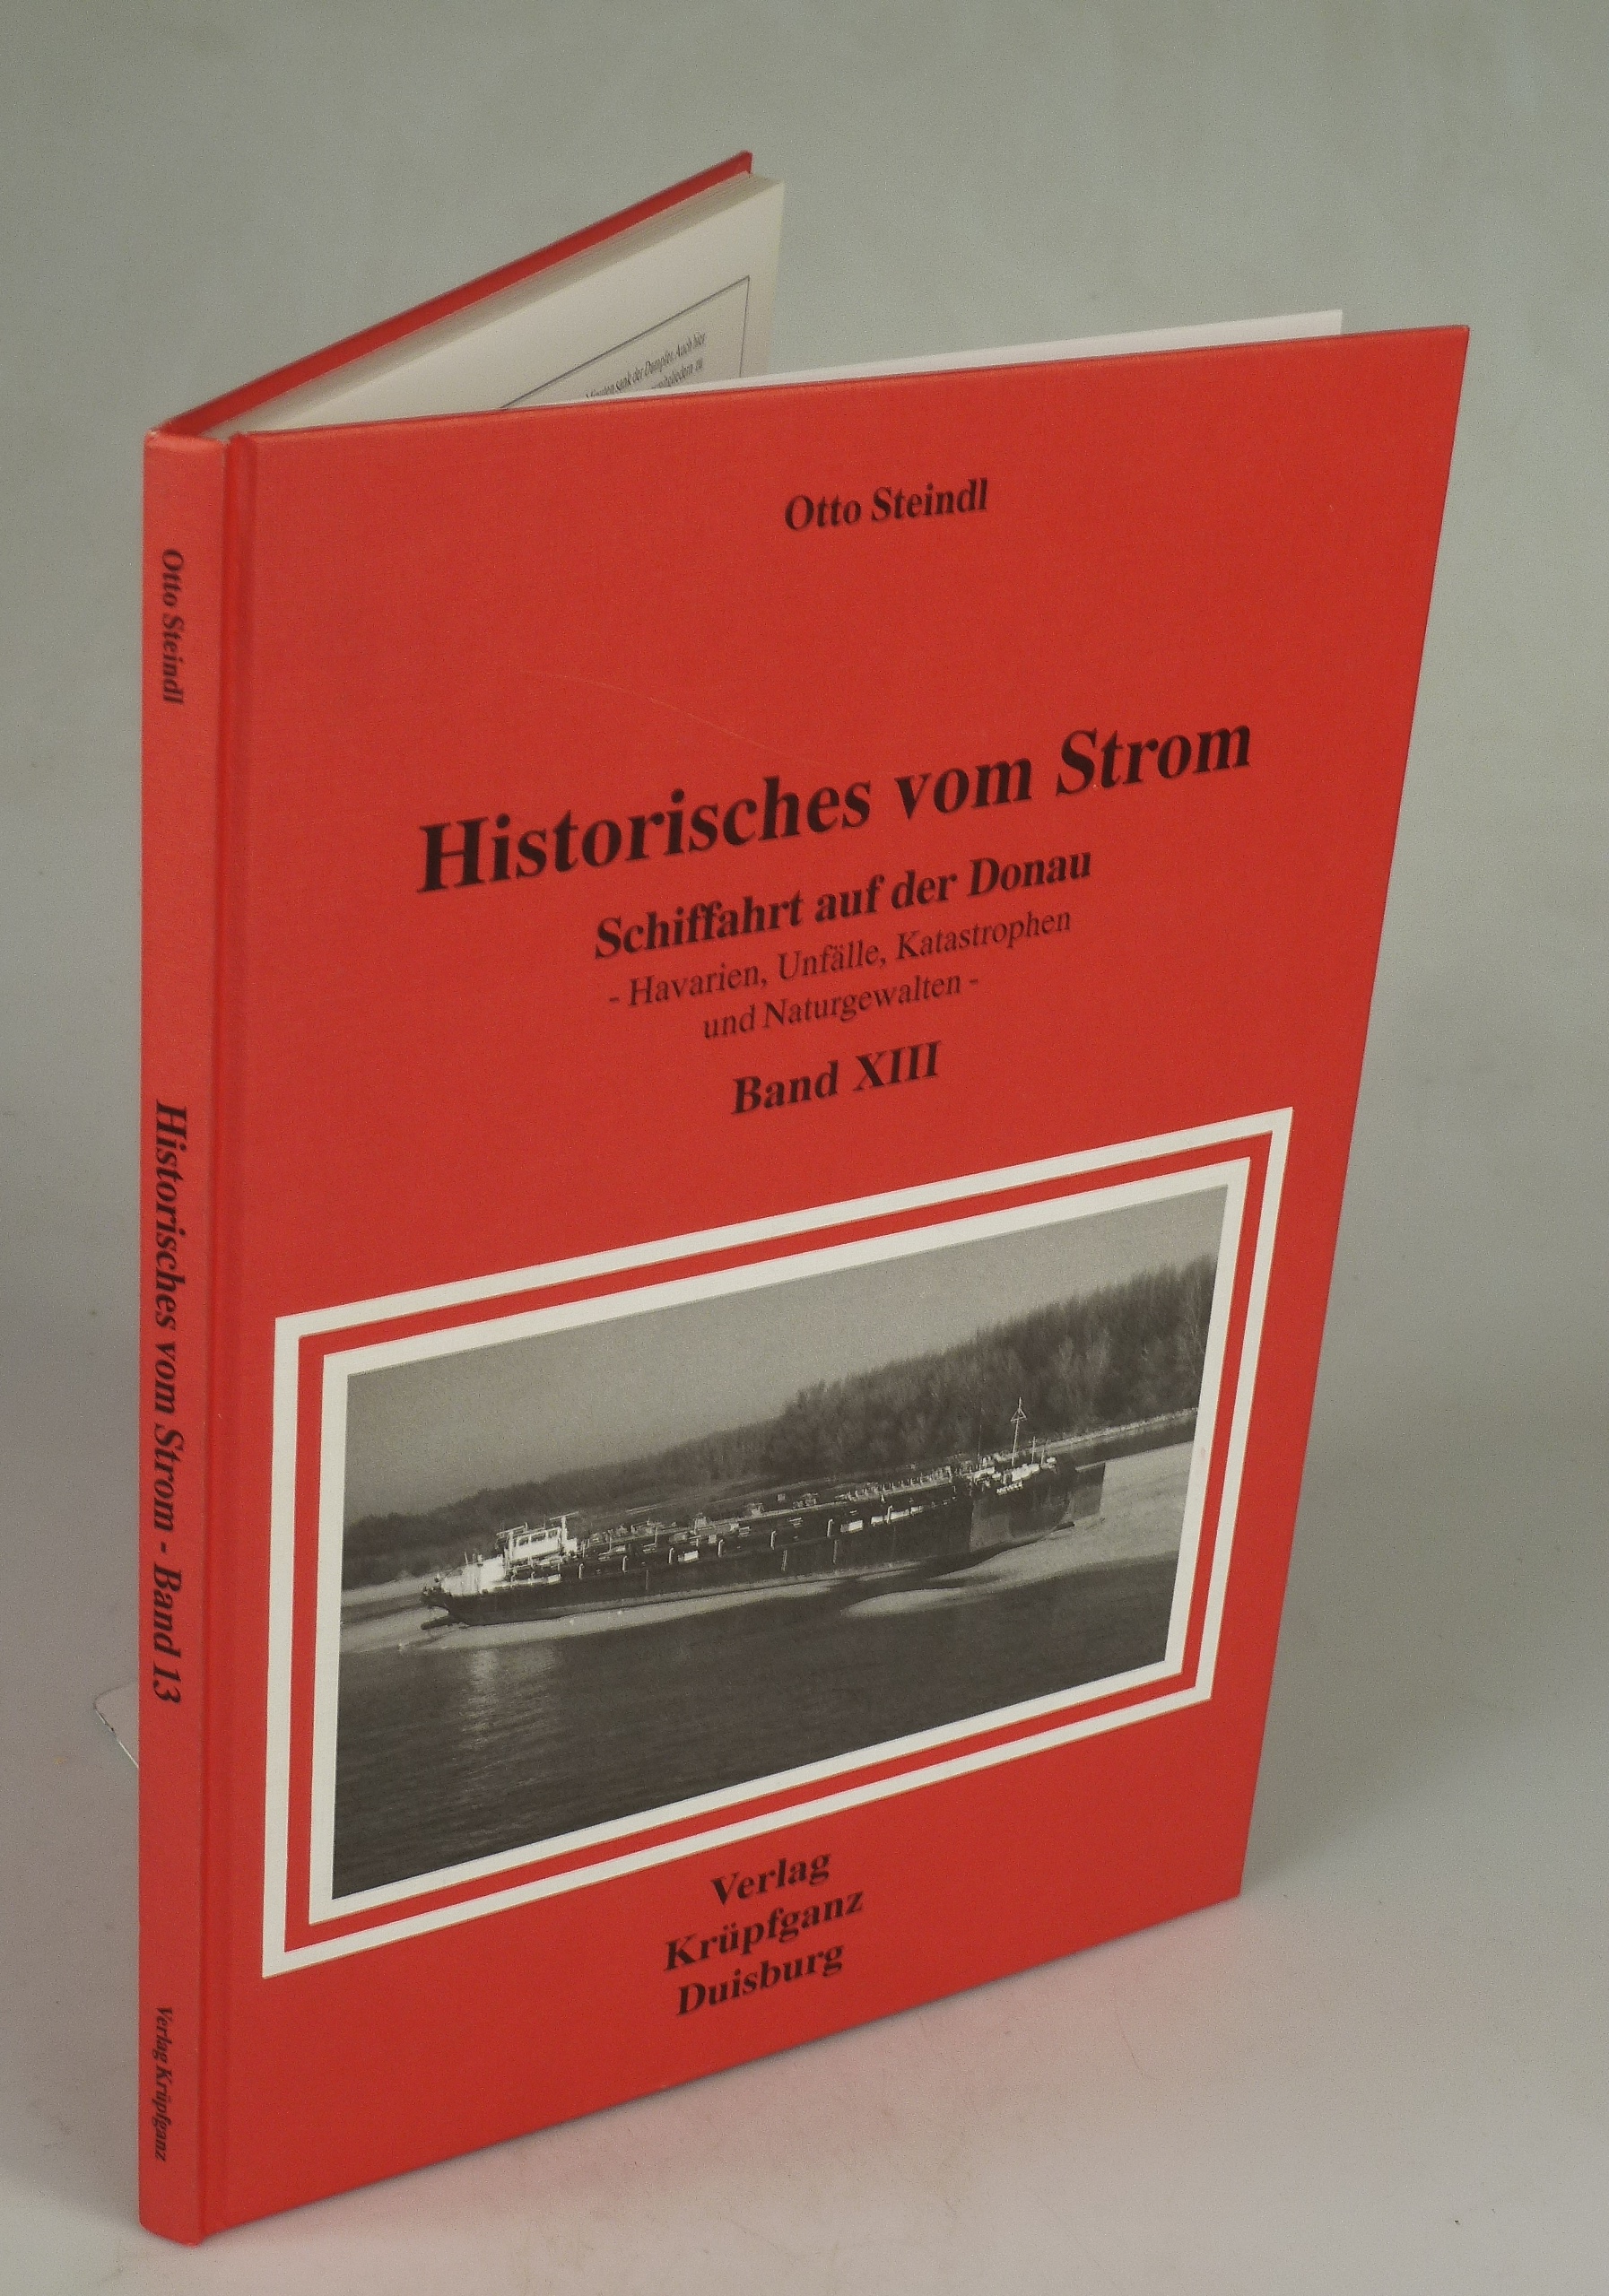 Historisches vom Strom. Schiffahrt auf der Donau Band XIII. - STEINDL, Otto.